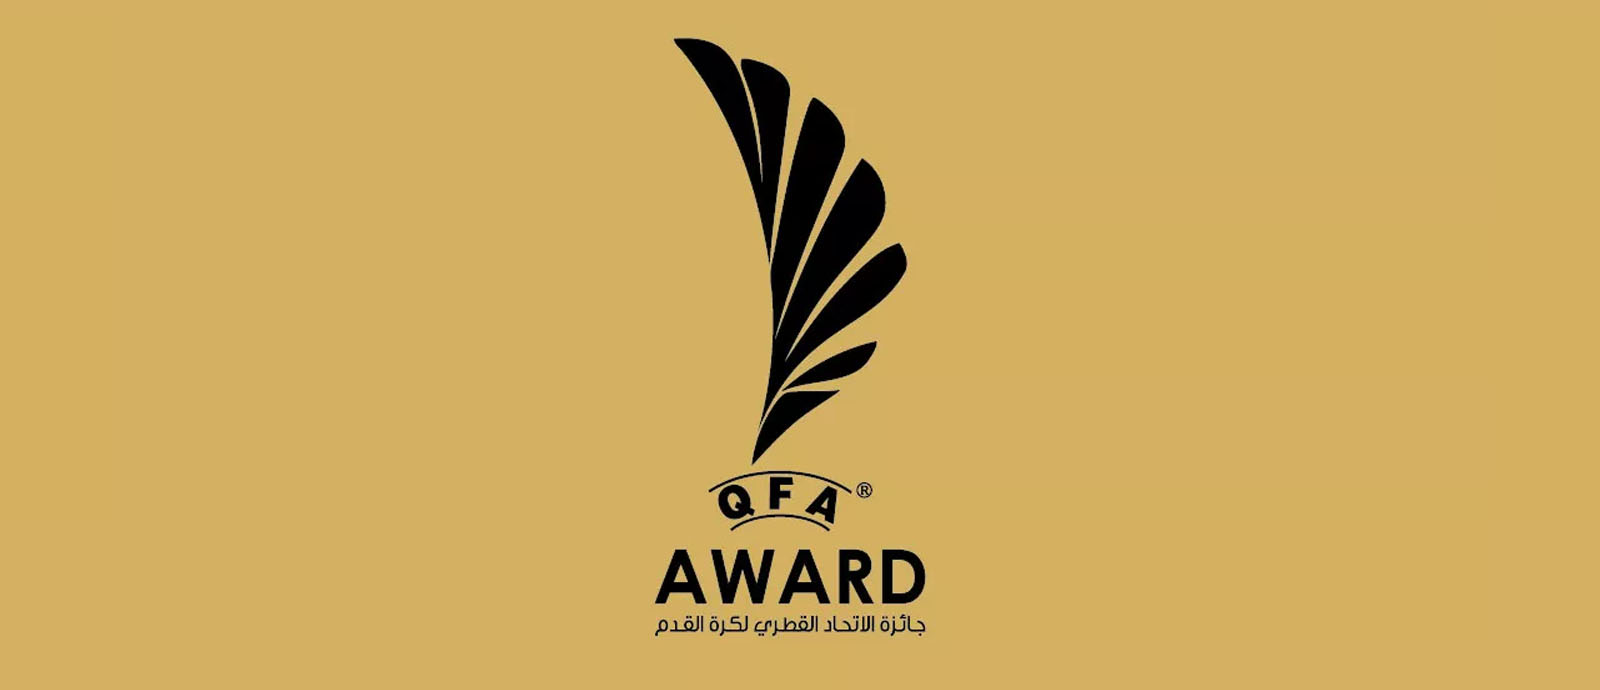 جائزة اتحاد الكرة للموسم الرياضي 2020-2021